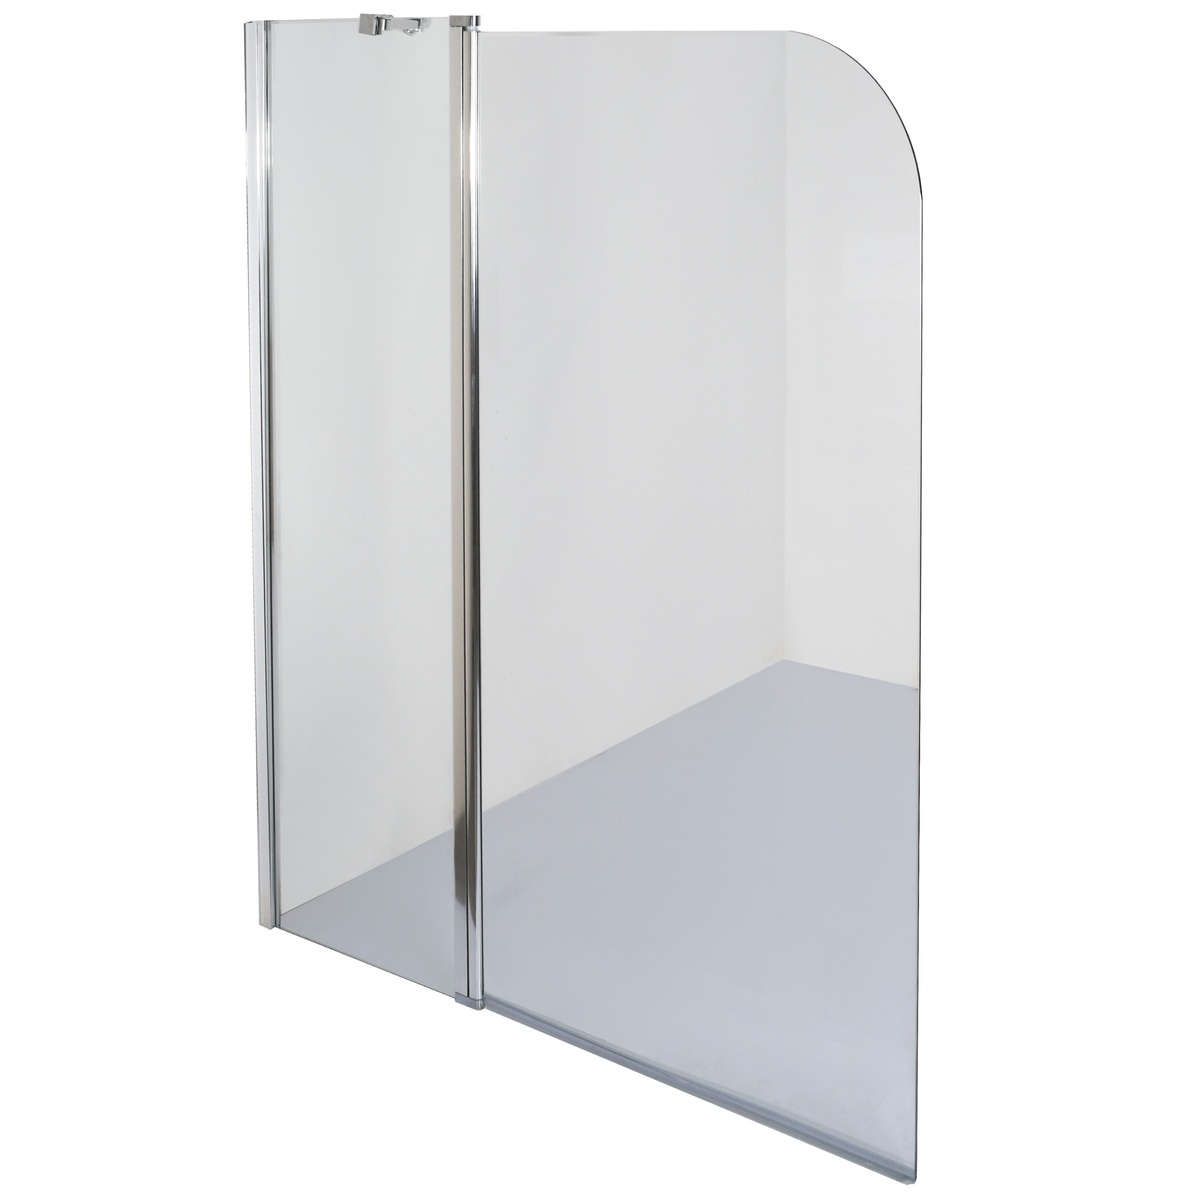 Шторка для ванны стеклянная BRAVO ENZA 120T универсальная двухсекционная распашная 140x120см прозрачная 6мм профиль хром 000023253